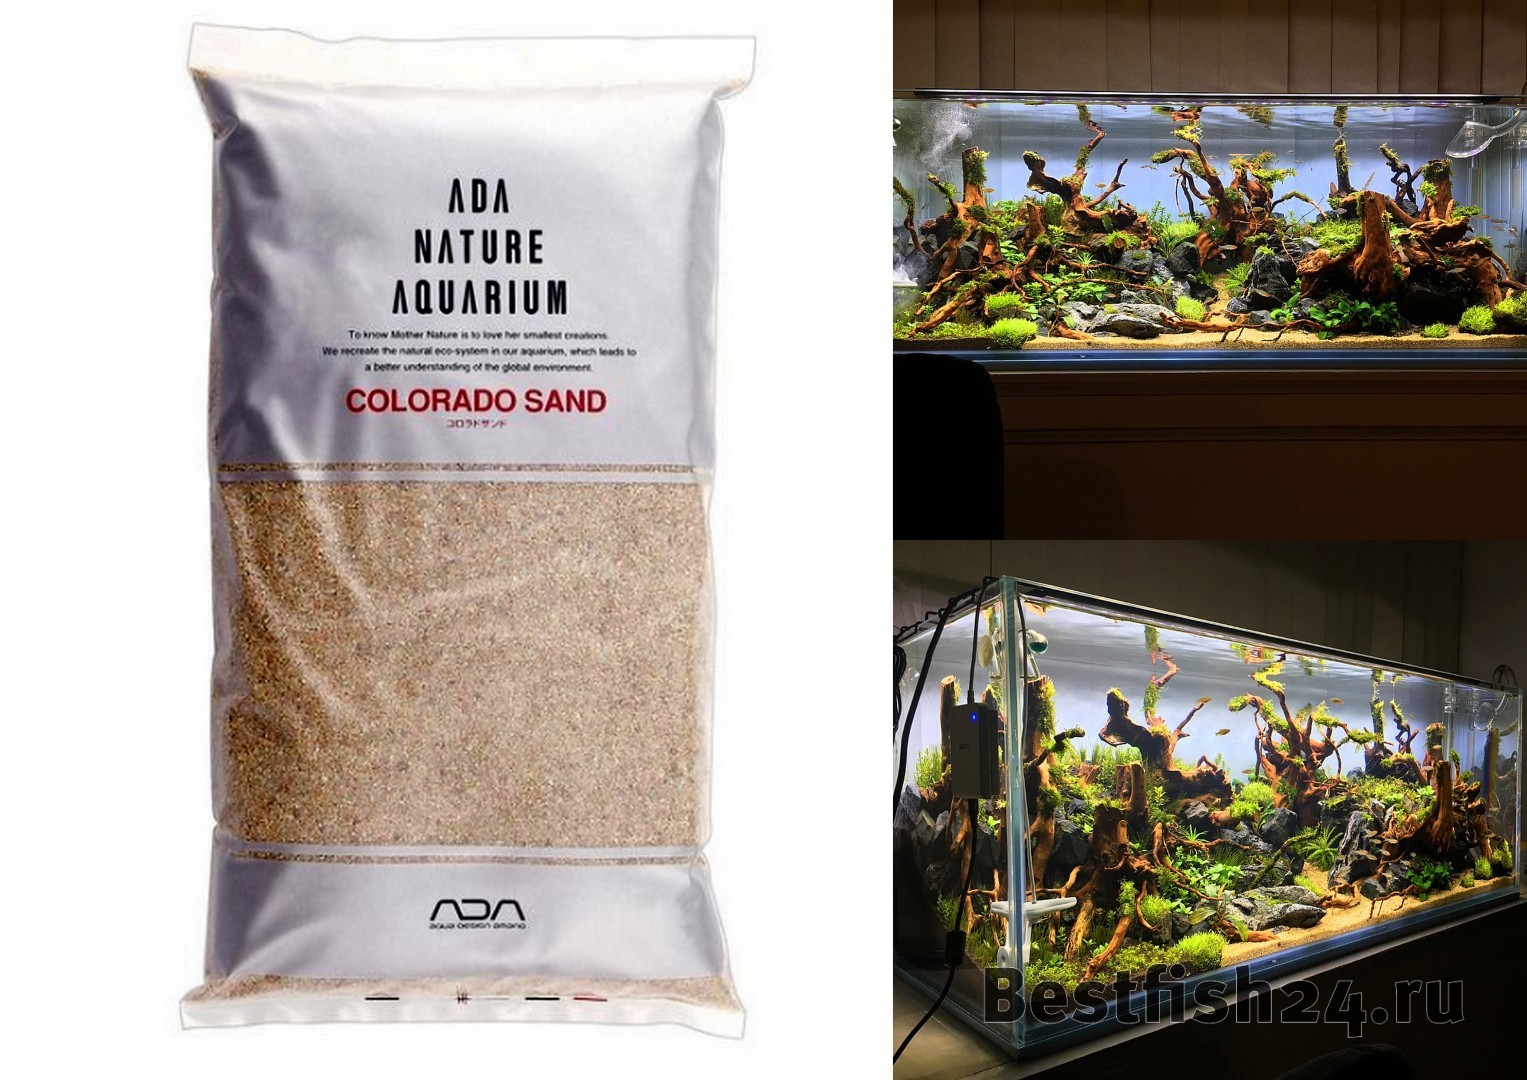 Низкая цена! Купить 1д) ADA Colorado sand 2кг, натуральный песок с  естественным красноватым оттенком не изменяет химические свойства воды за  1466 руб.! В наличии более 280 видов аквариумных рыбок и 4000 товаров для  аквариума!